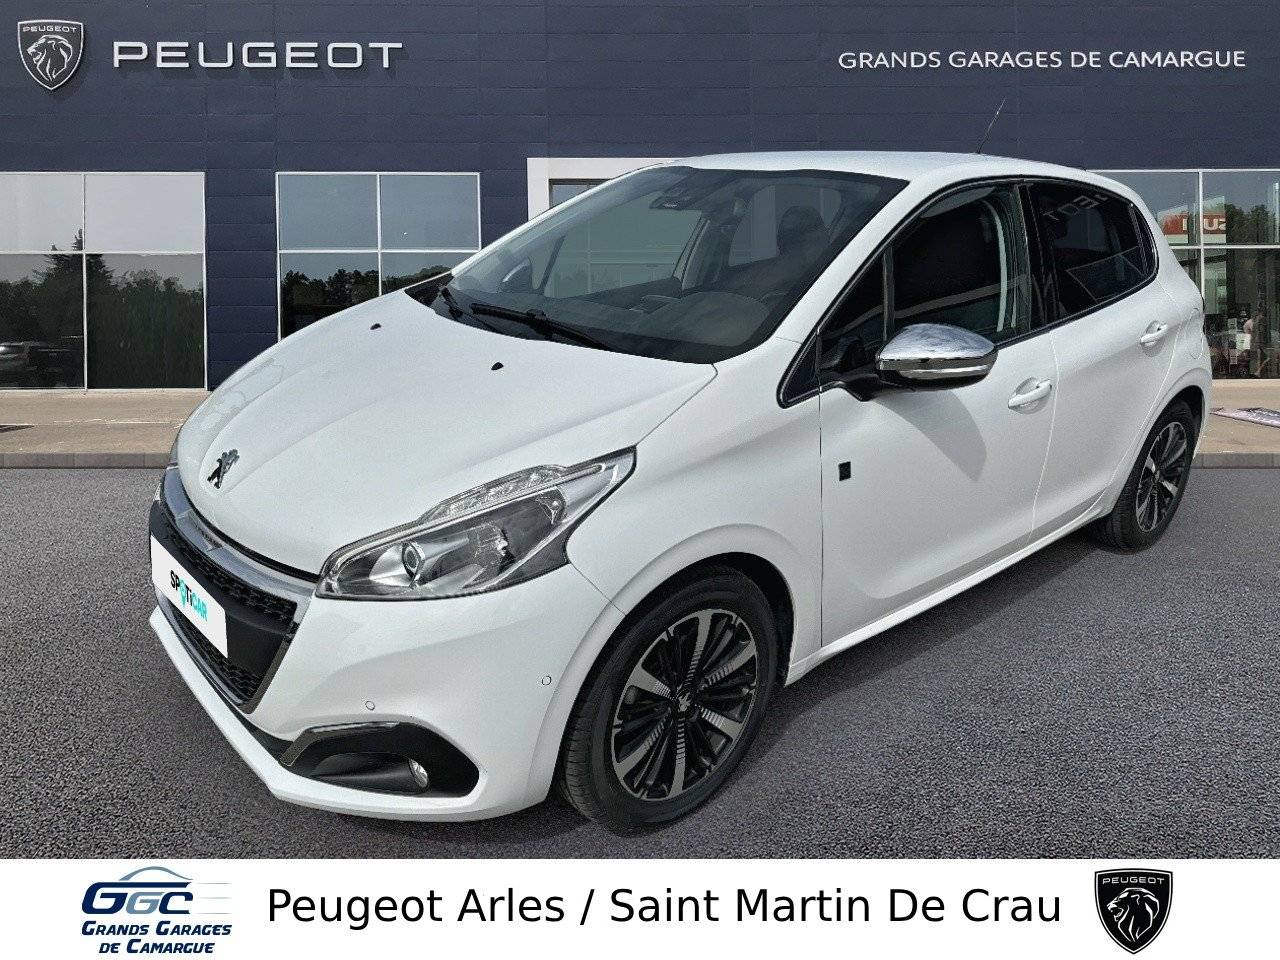 PEUGEOT 208 | 208 PureTech 110ch S&S EAT6 occasion - Peugeot Arles